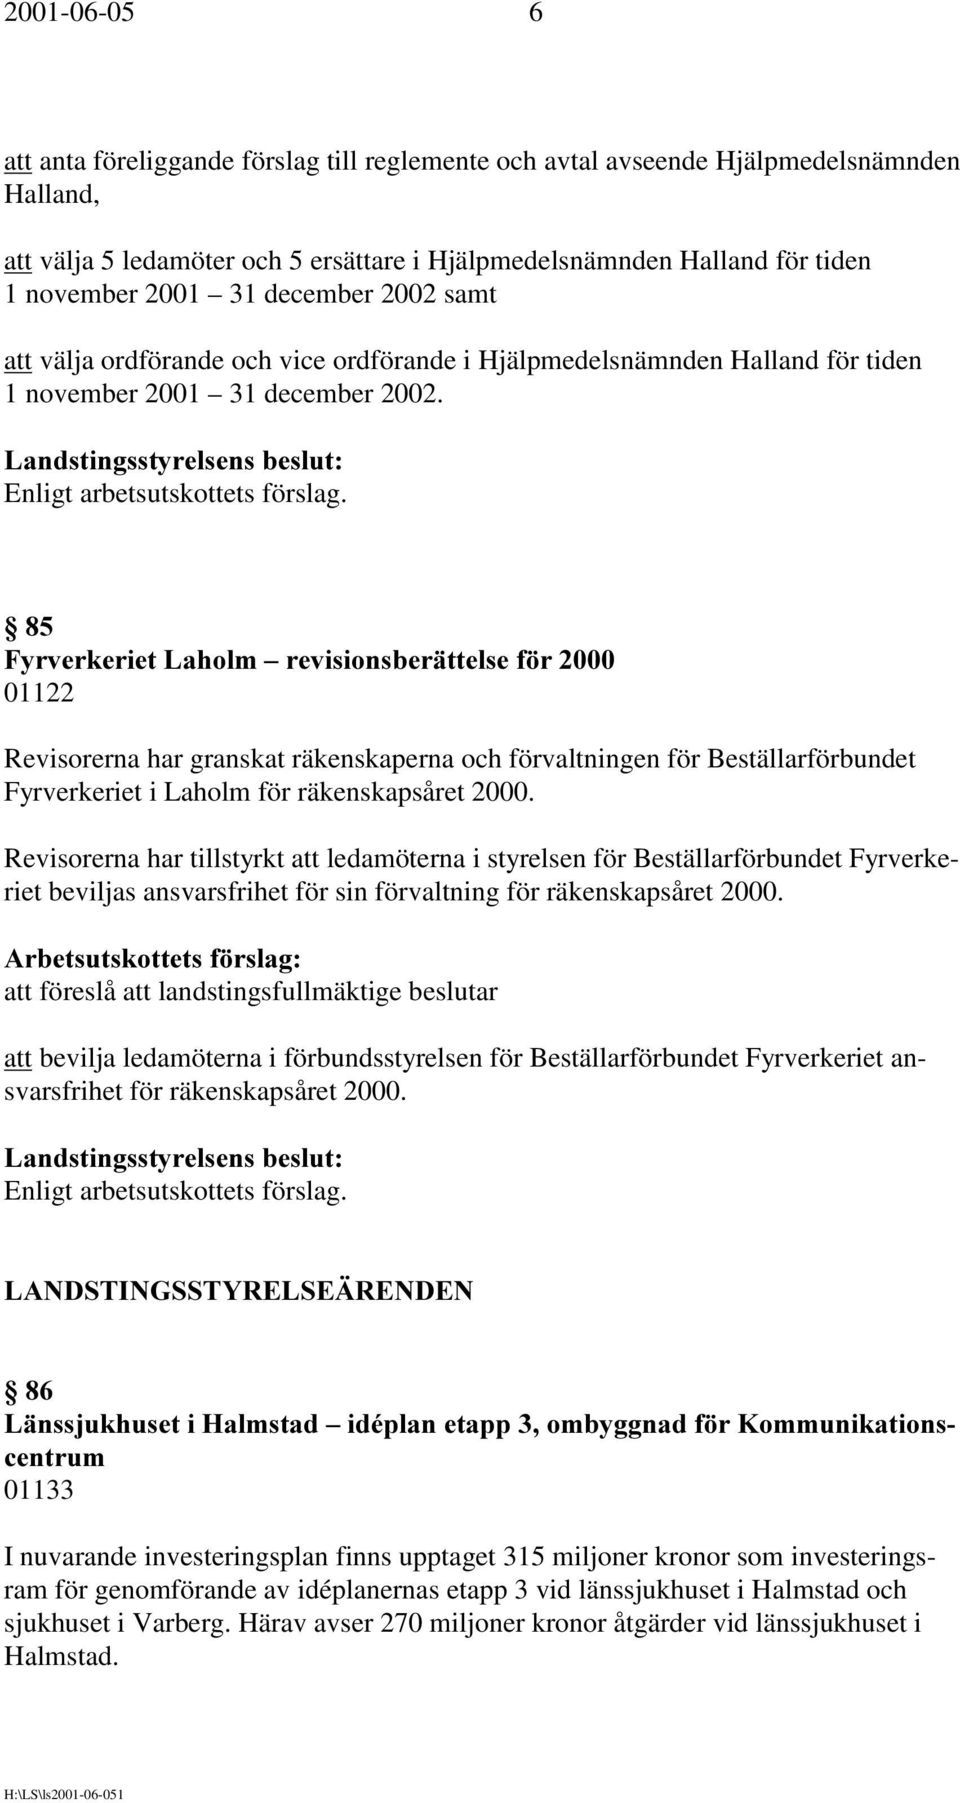 )\UYHUNHULHW/DKROP±UHYLVLRQVEHUlWWHOVHI U 01122 Revisorerna har granskat räkenskaperna och förvaltningen för Beställarförbundet Fyrverkeriet i Laholm för räkenskapsåret 2000.